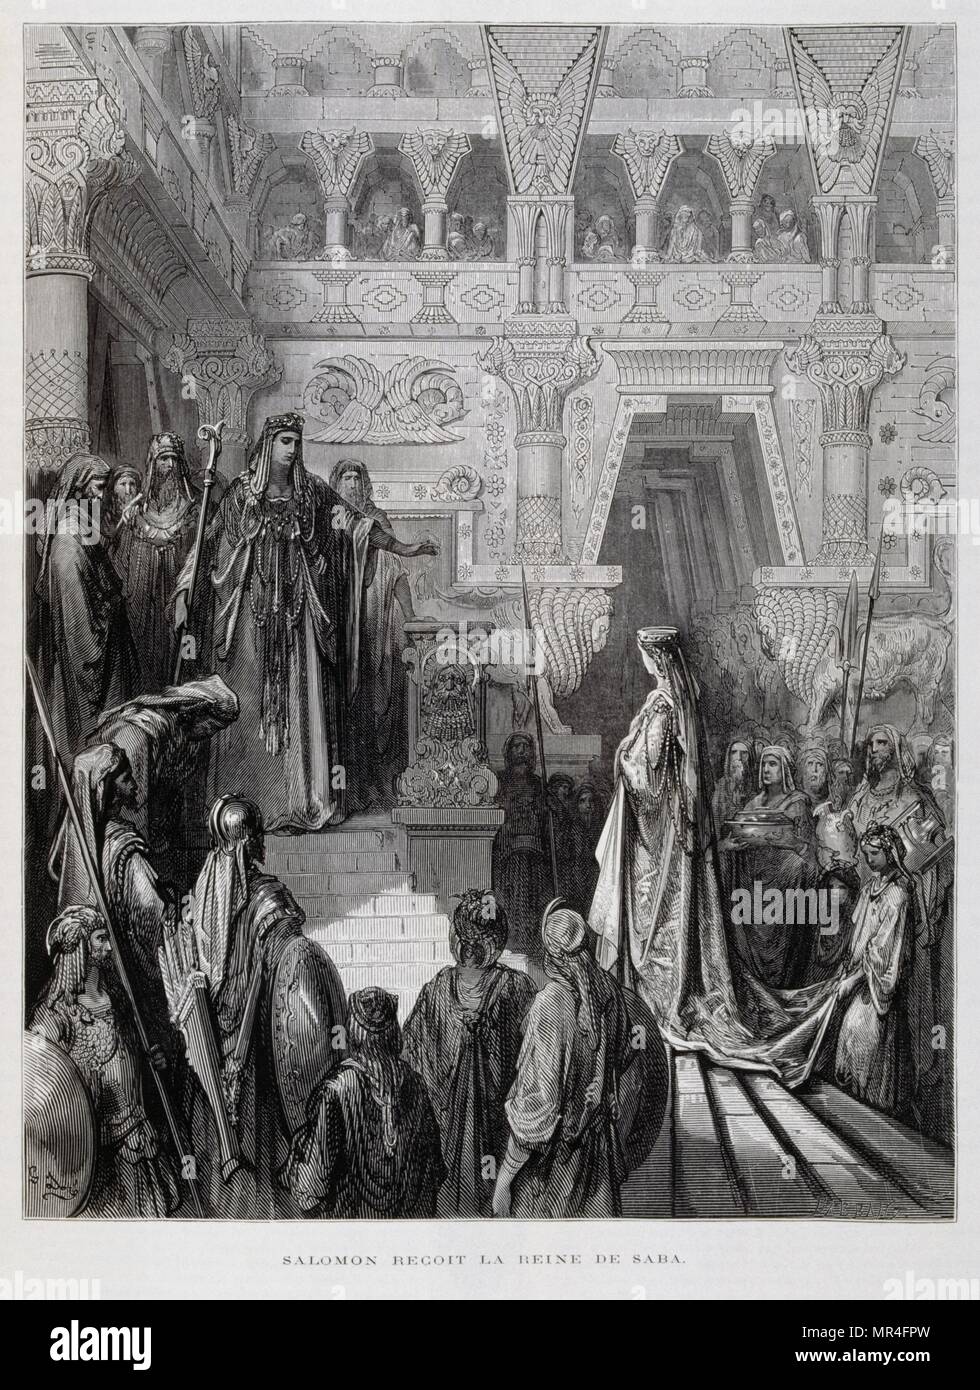 Le roi Salomon reçoit la reine de Saba, Illustration de la Dore Bible 1866.  En 1866, l'artiste et illustrateur français Gustave Doré (1832-1883), a  publié une série de 241 gravures sur bois